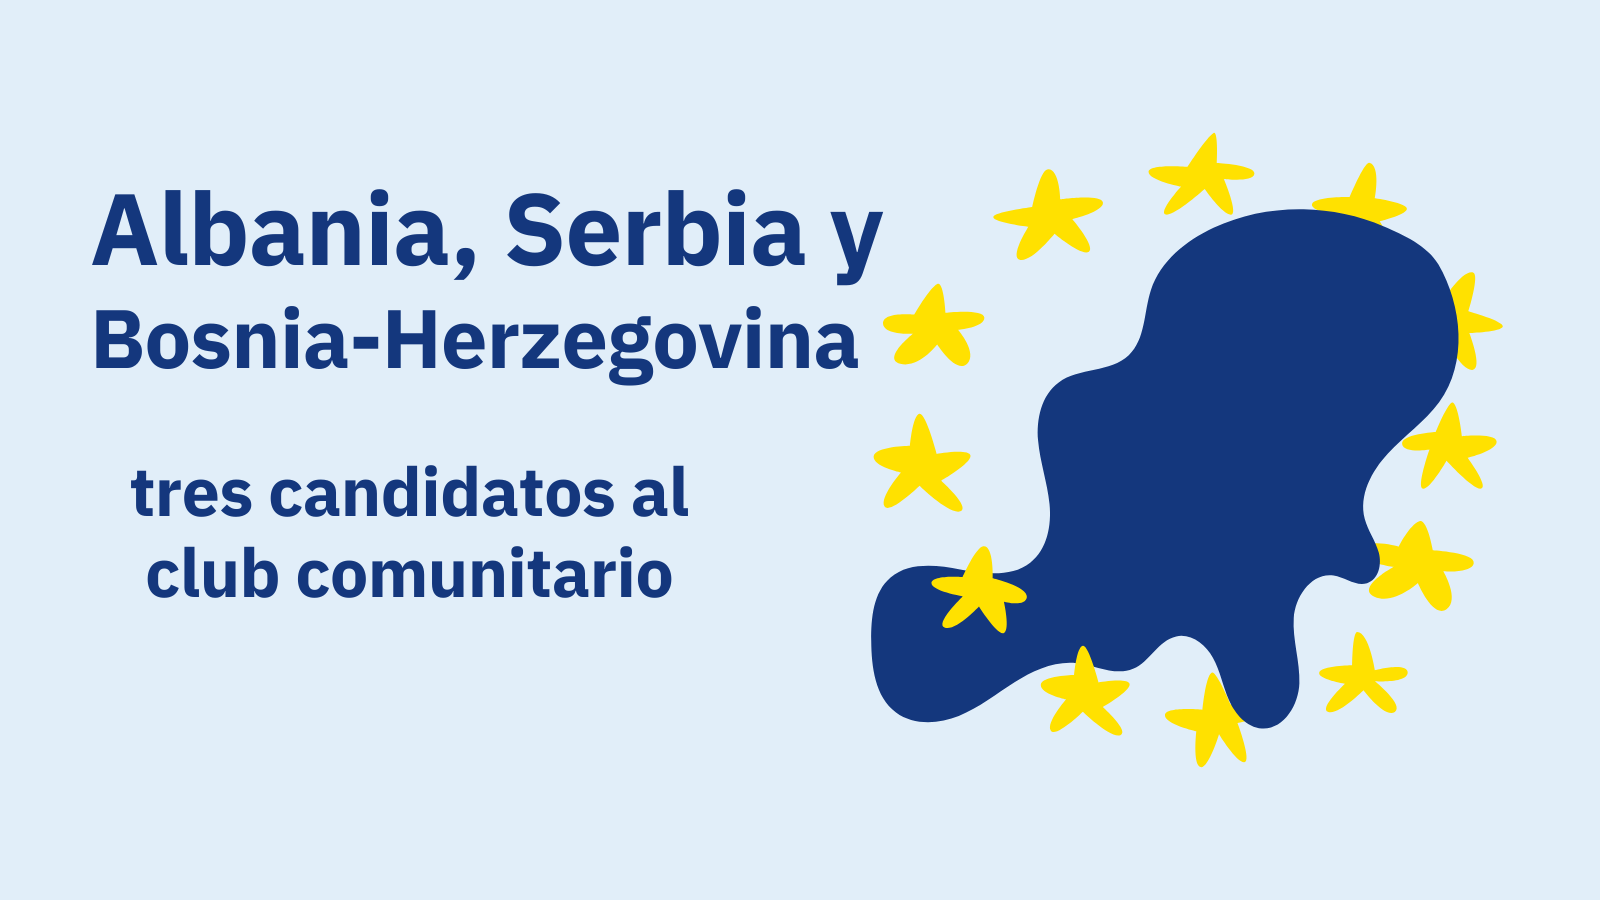 Albania, Bosnia-Herzegovina y Serbia: tres candidatos al club comunitario